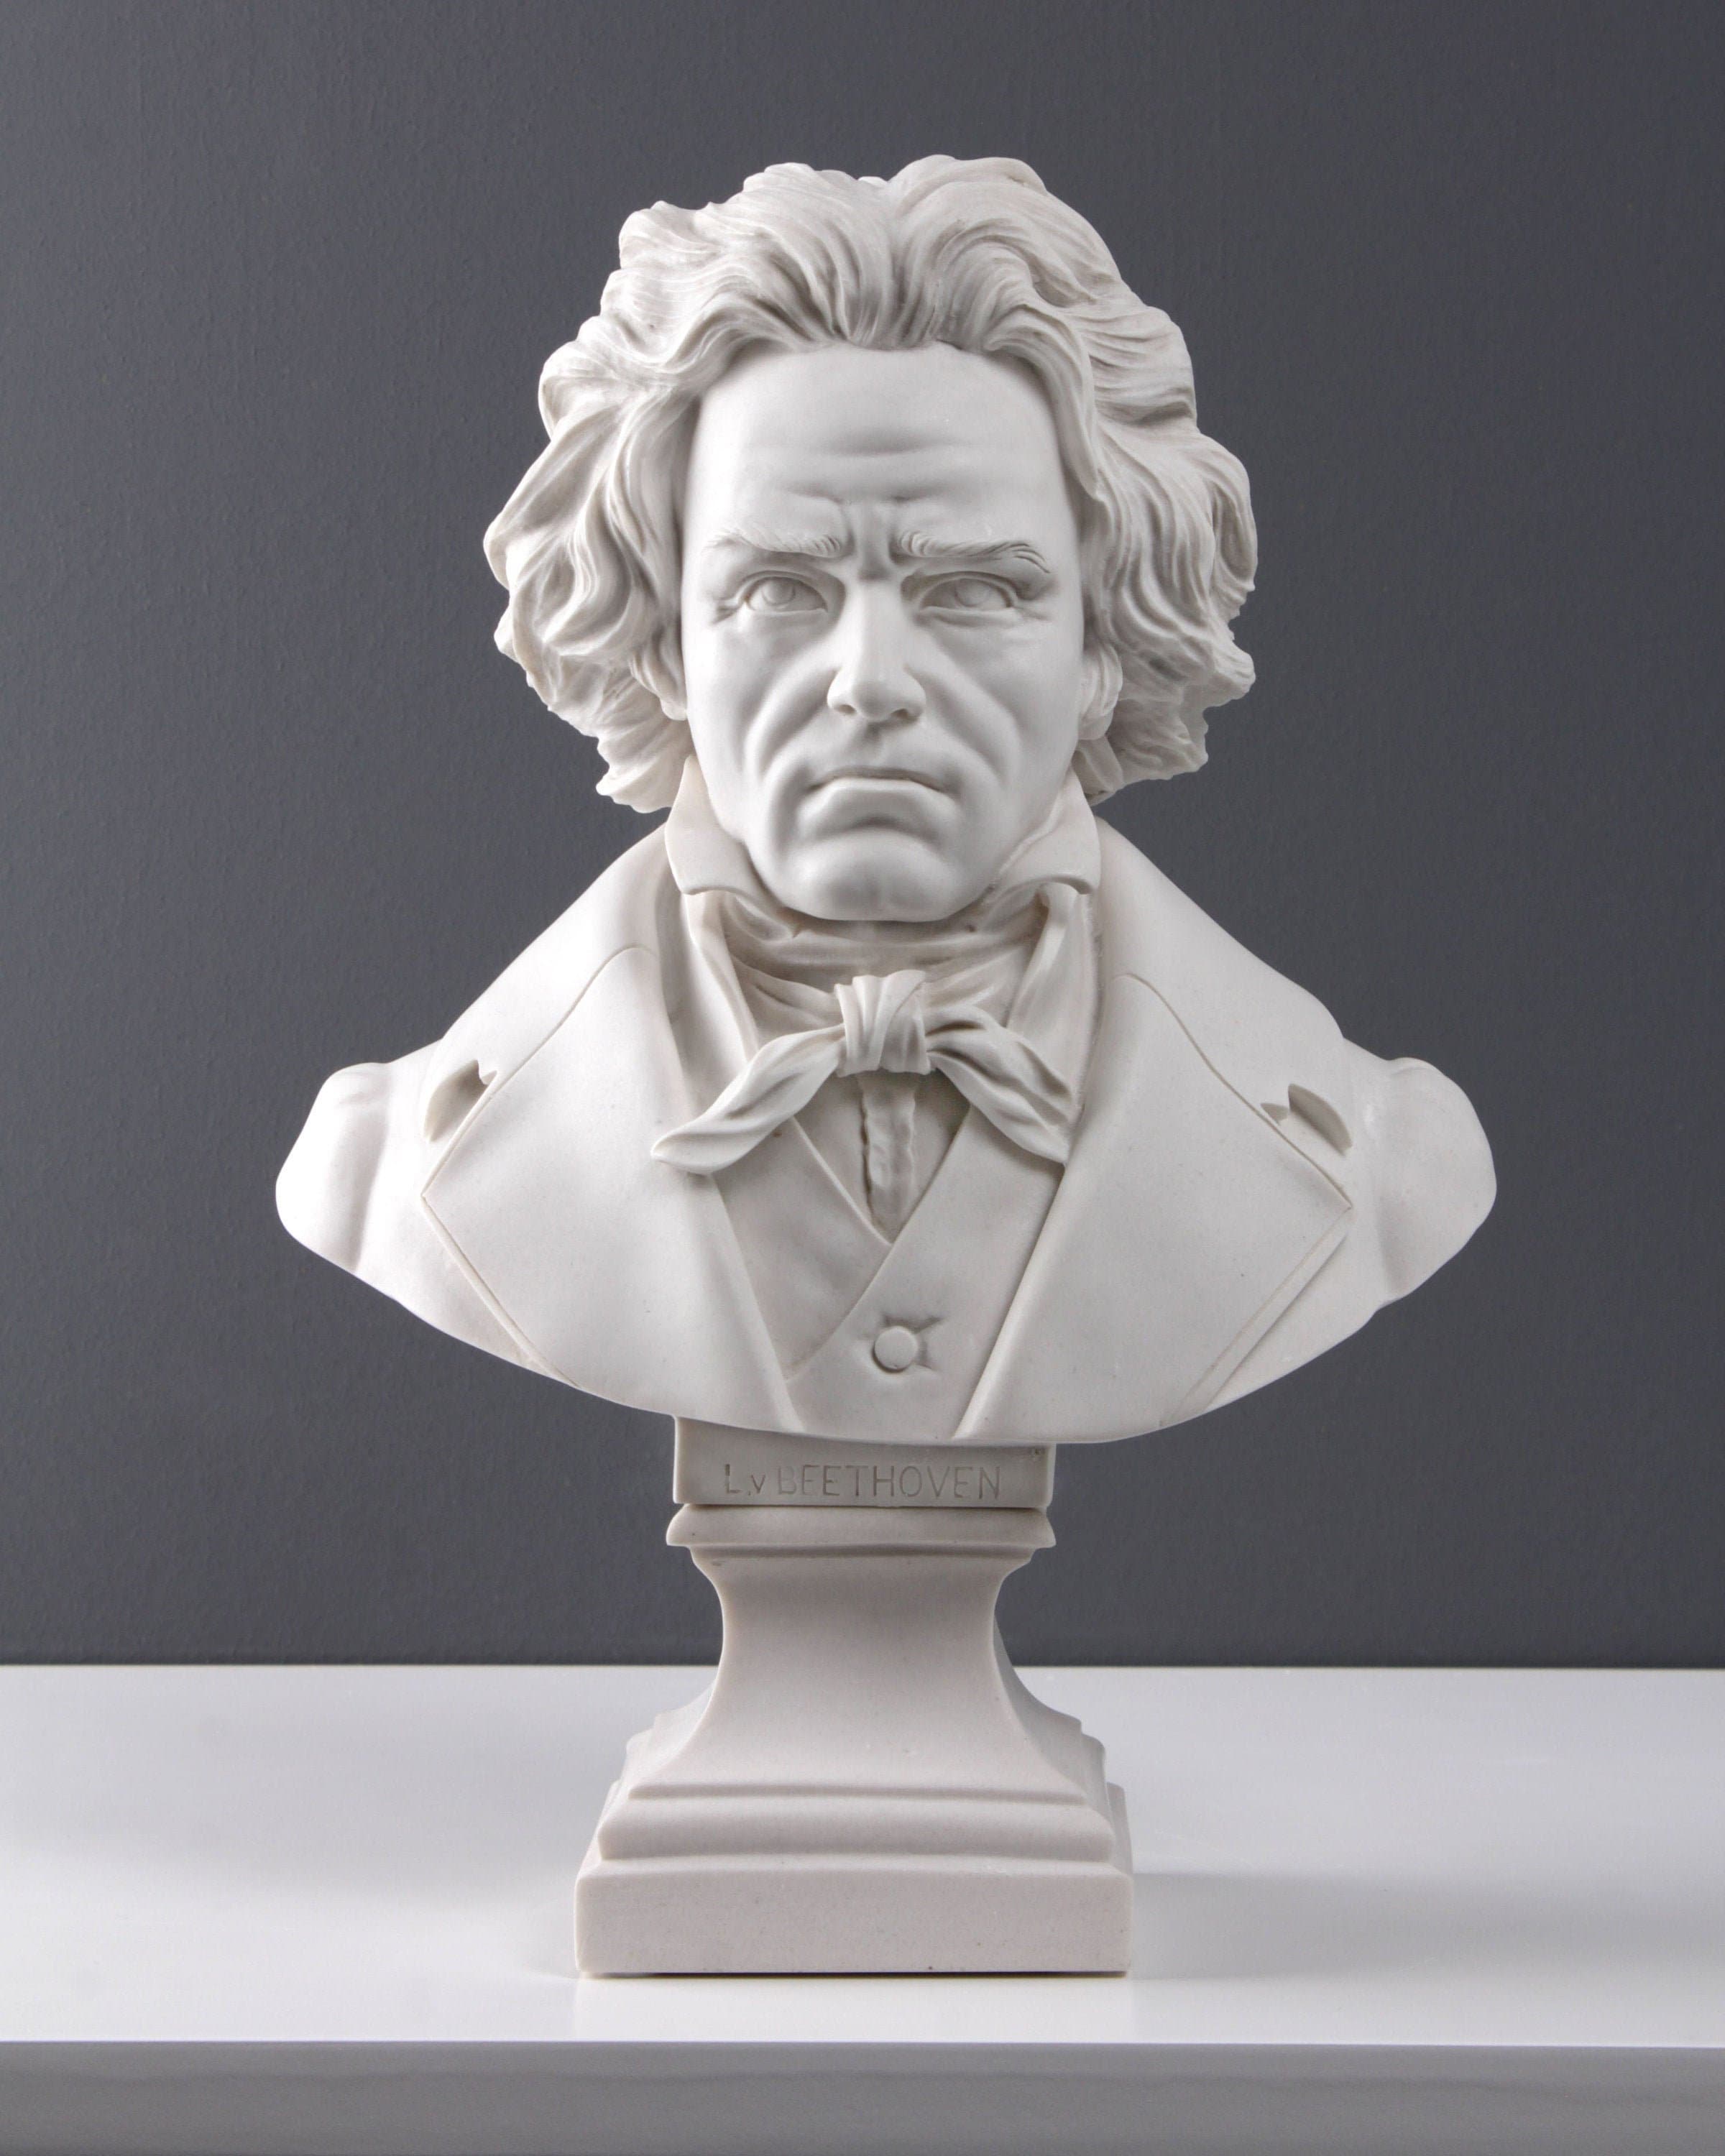 EXCEART Beethoven Statua Busto Musica Classica Compositore Busto Statuette in Resina da Collezione di Arte Figura Famoso Ritratto di Scultura per Home Office Galleria 